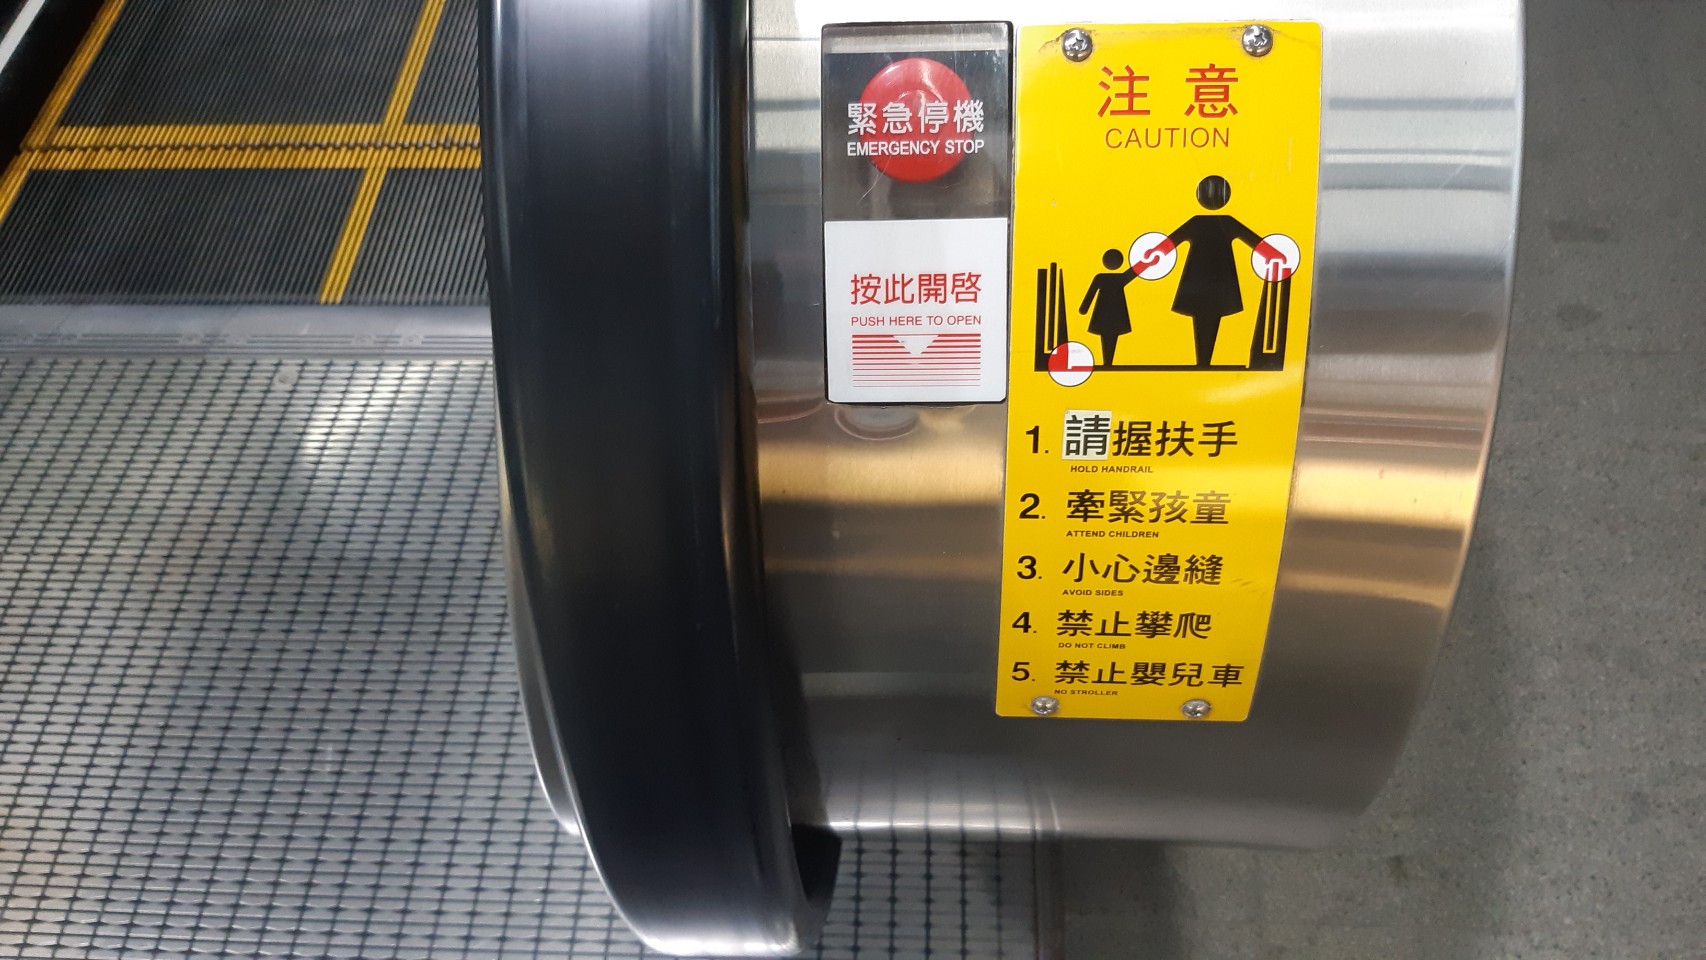 電扶梯緊急停機按鈕